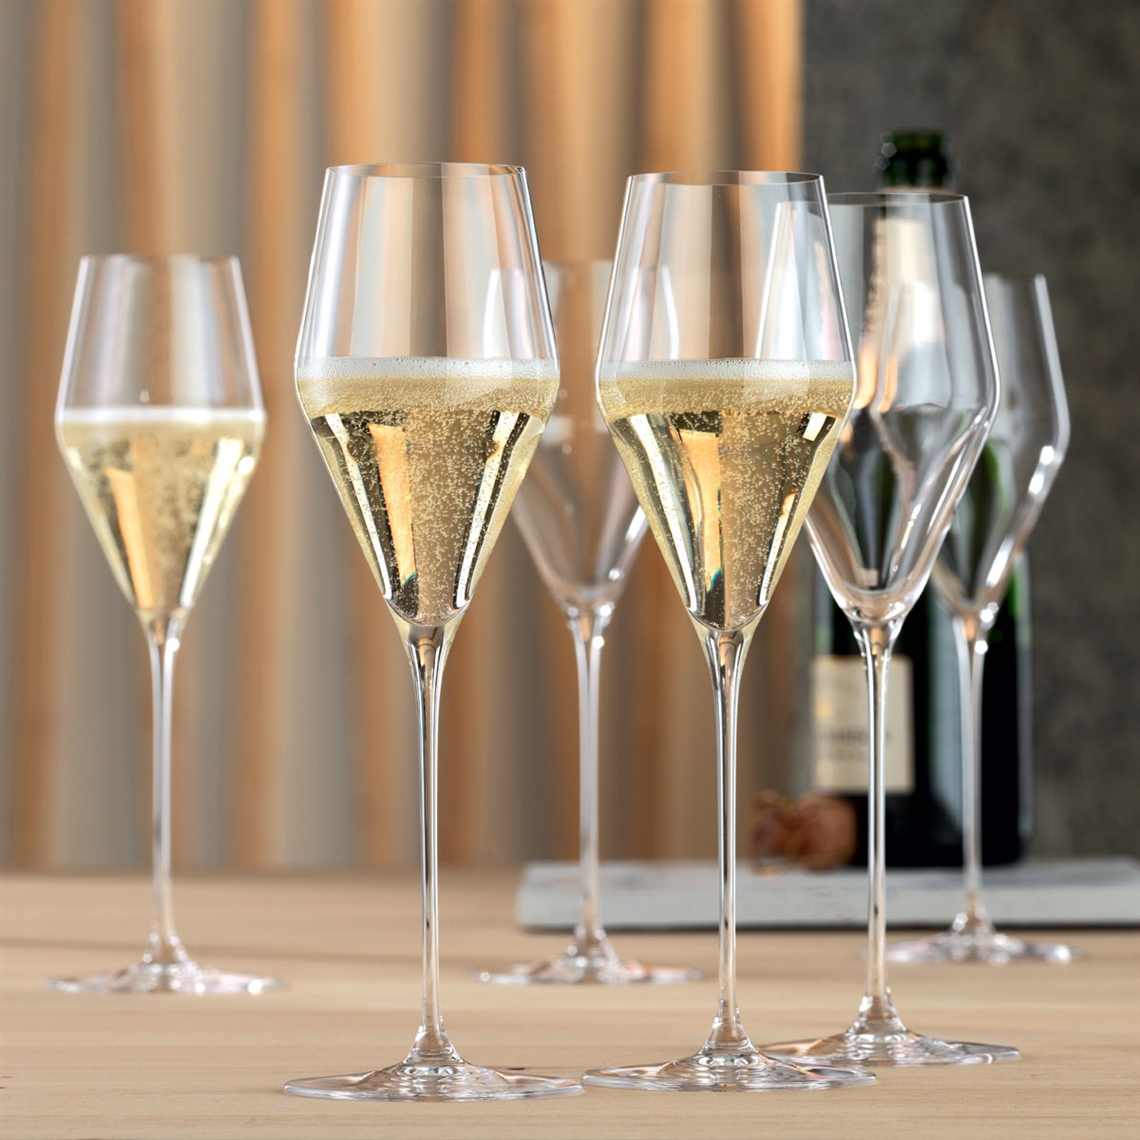 Spiegelau Restaurant Definition Champagne Glass 250ml